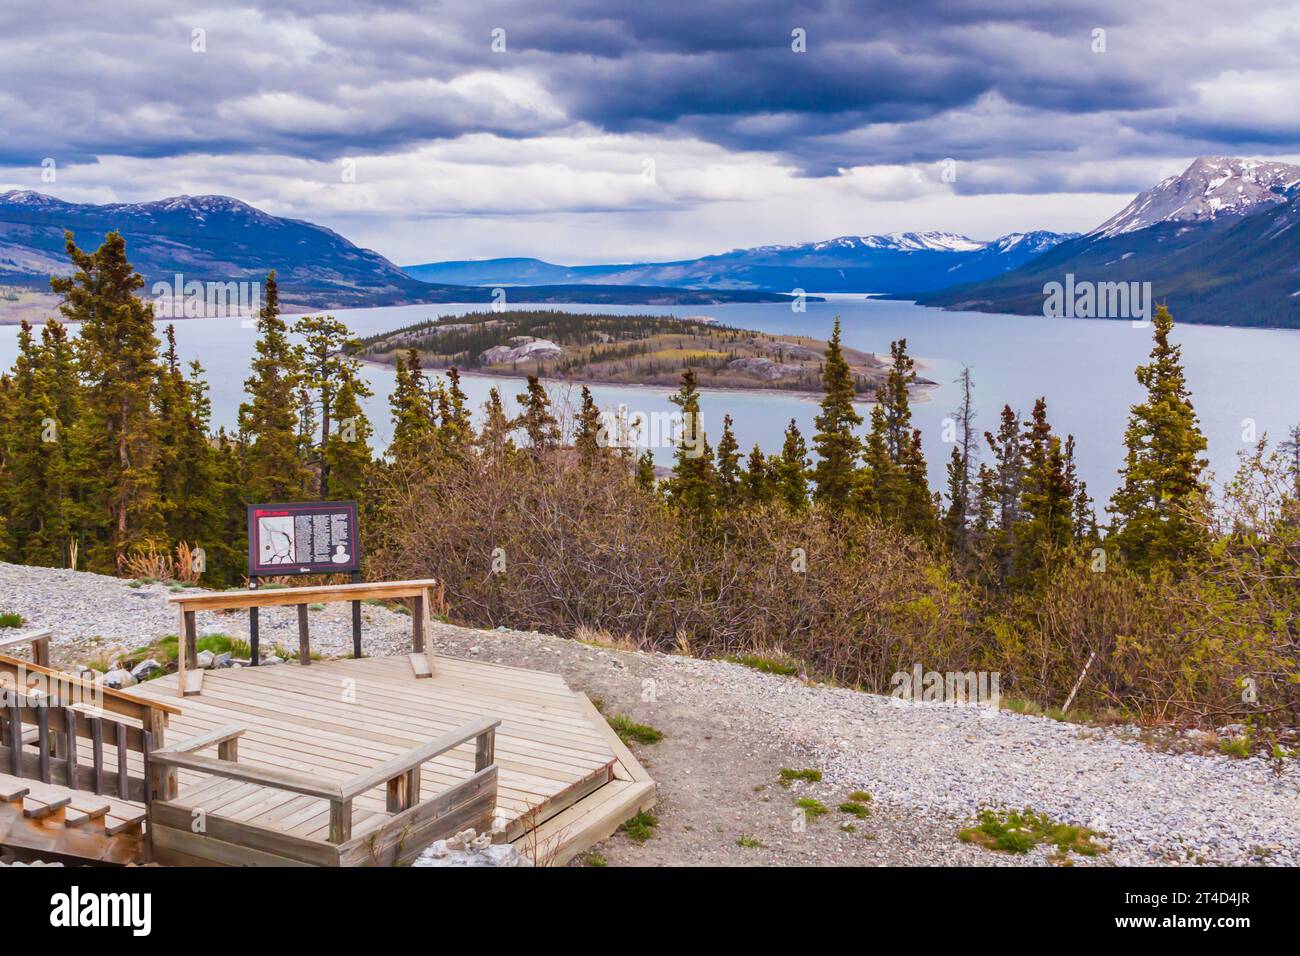 Bove Island e il Windy Arm del lago Tagish nel territorio dello Yukon, Canada. Il Windy Arm del lago Tagish era una volta parte di uno storico percorso a pale. Foto Stock